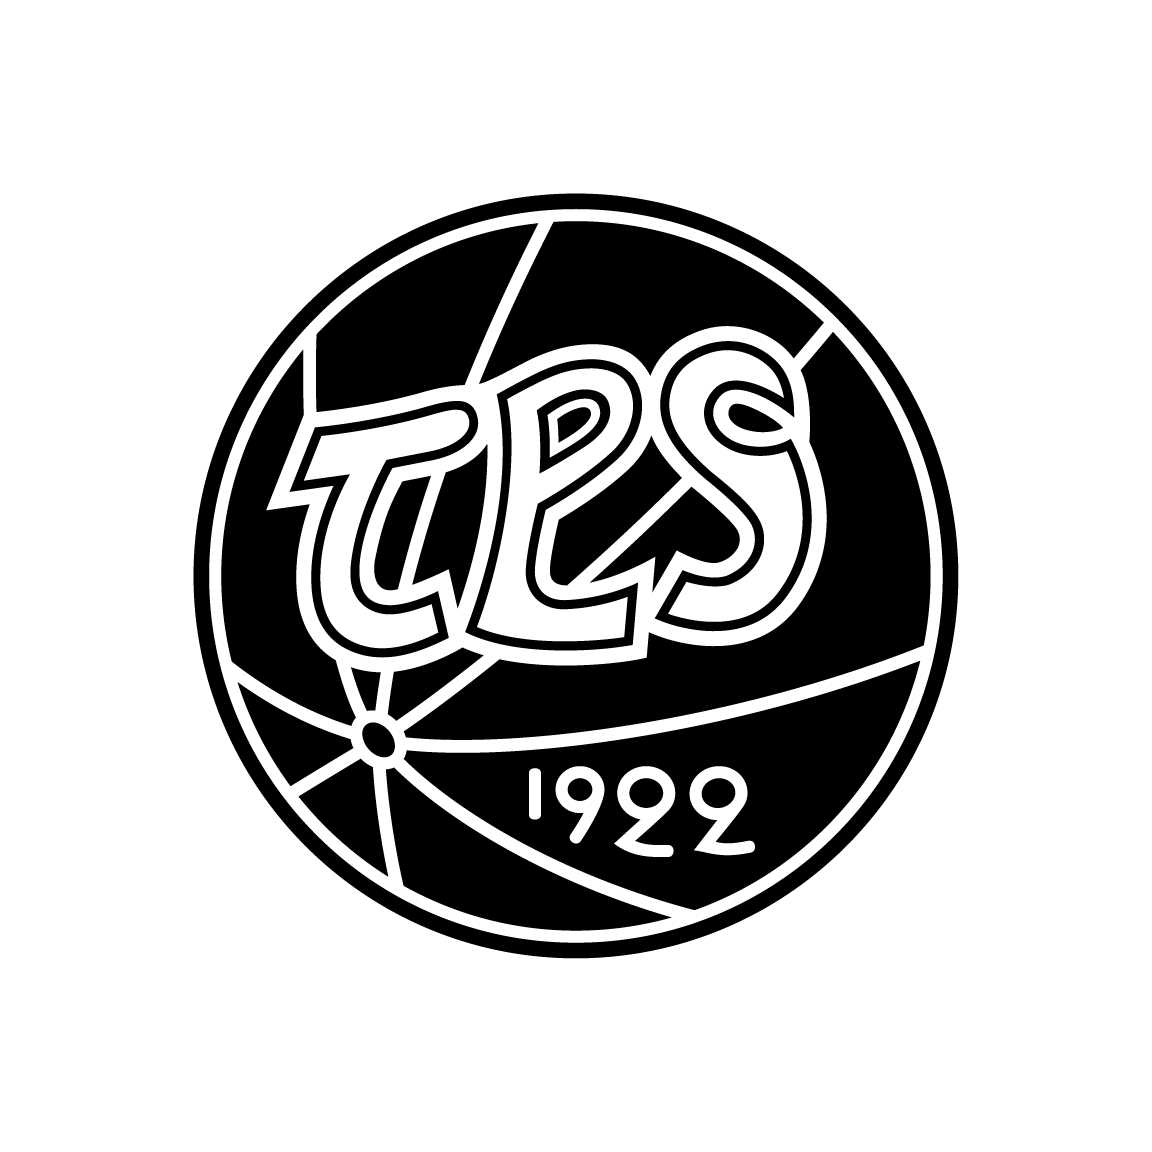 TPS-logo 2017